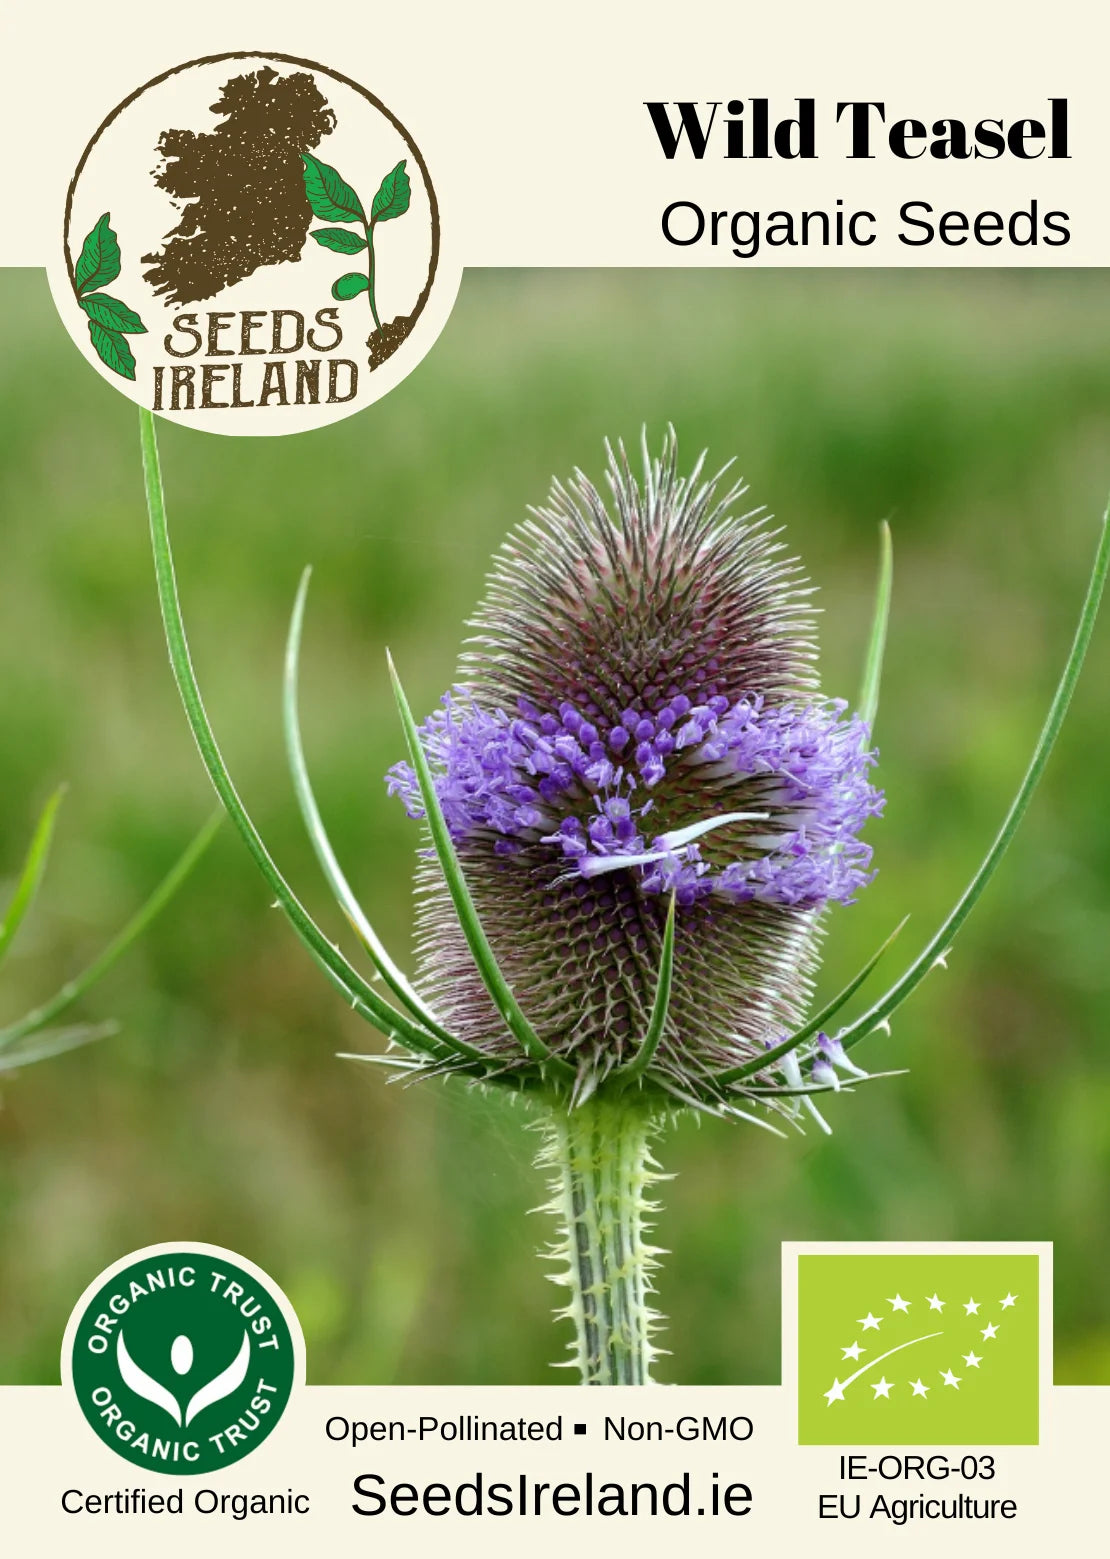 Wild Teasel Organic Seed